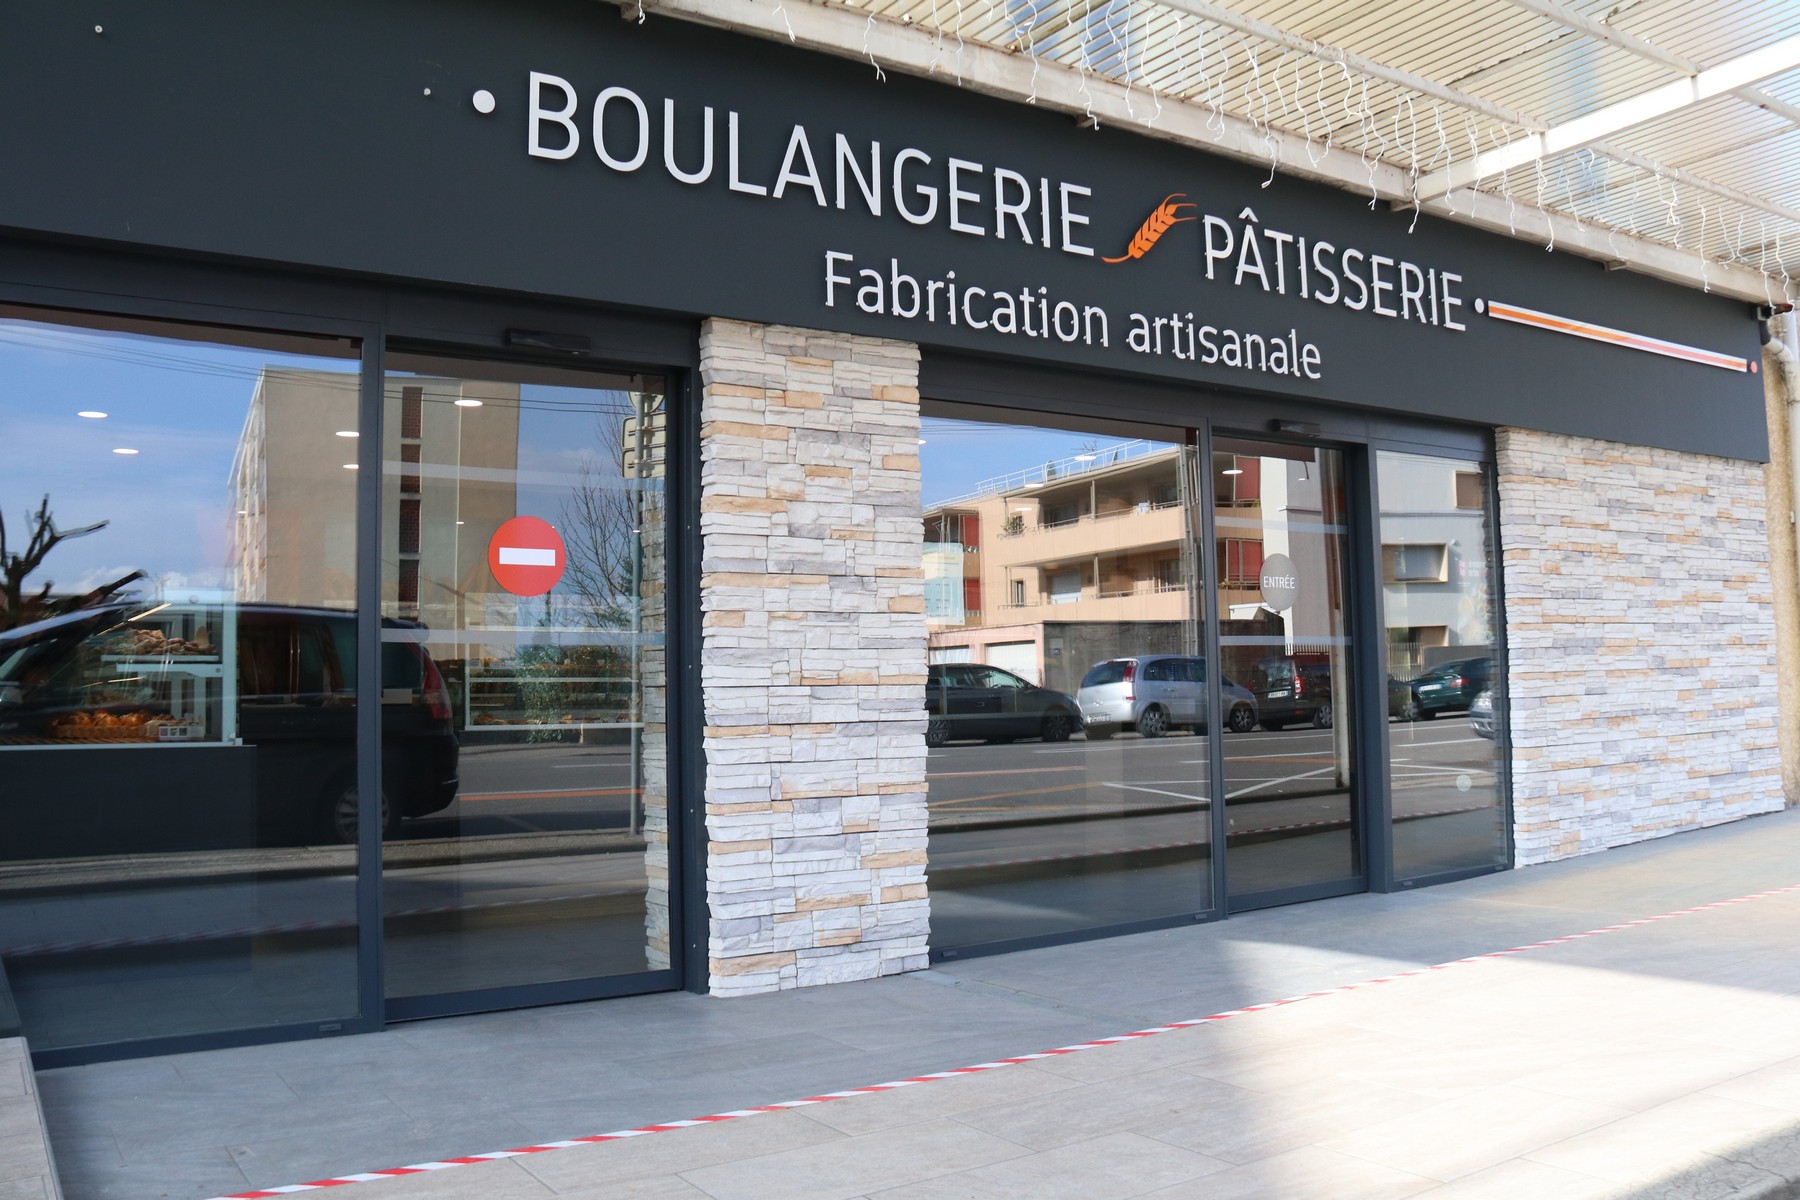 Le Régal Bressan est une société composé de deux boulangeries-pâtisseries artisanales. Une située à Bourg-en-Bresse et l'autre à Saint-Denis-lès-Bourg.